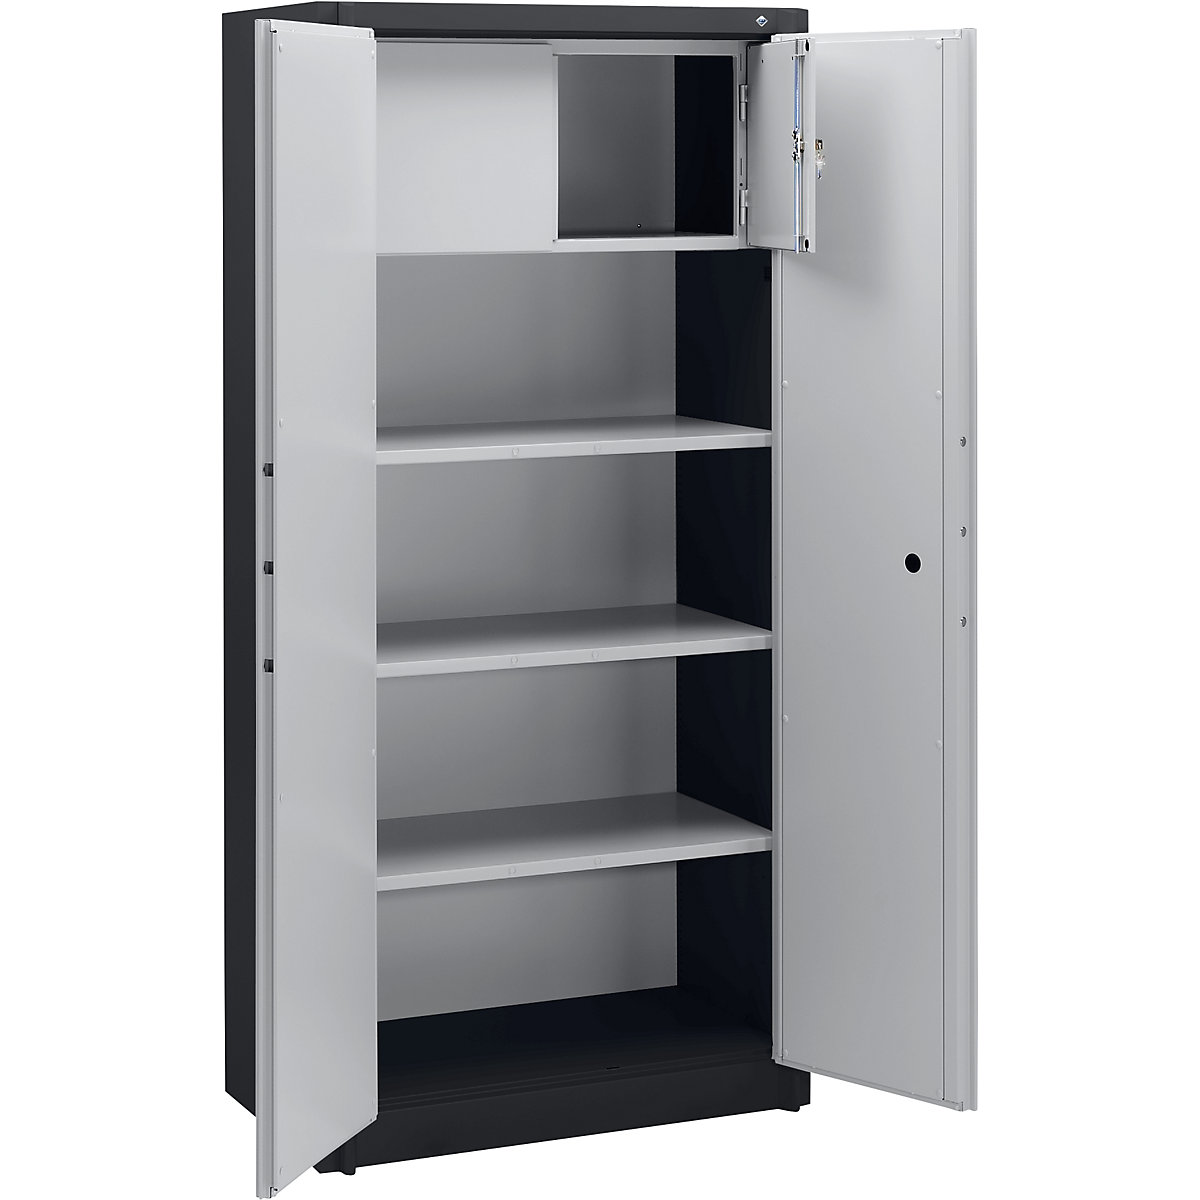 Steel cupboard, fireproof – C+P, DIN 4102 compliant, HxWxD 1950 x 930 x 500 mm, black grey/light grey, with locker-7